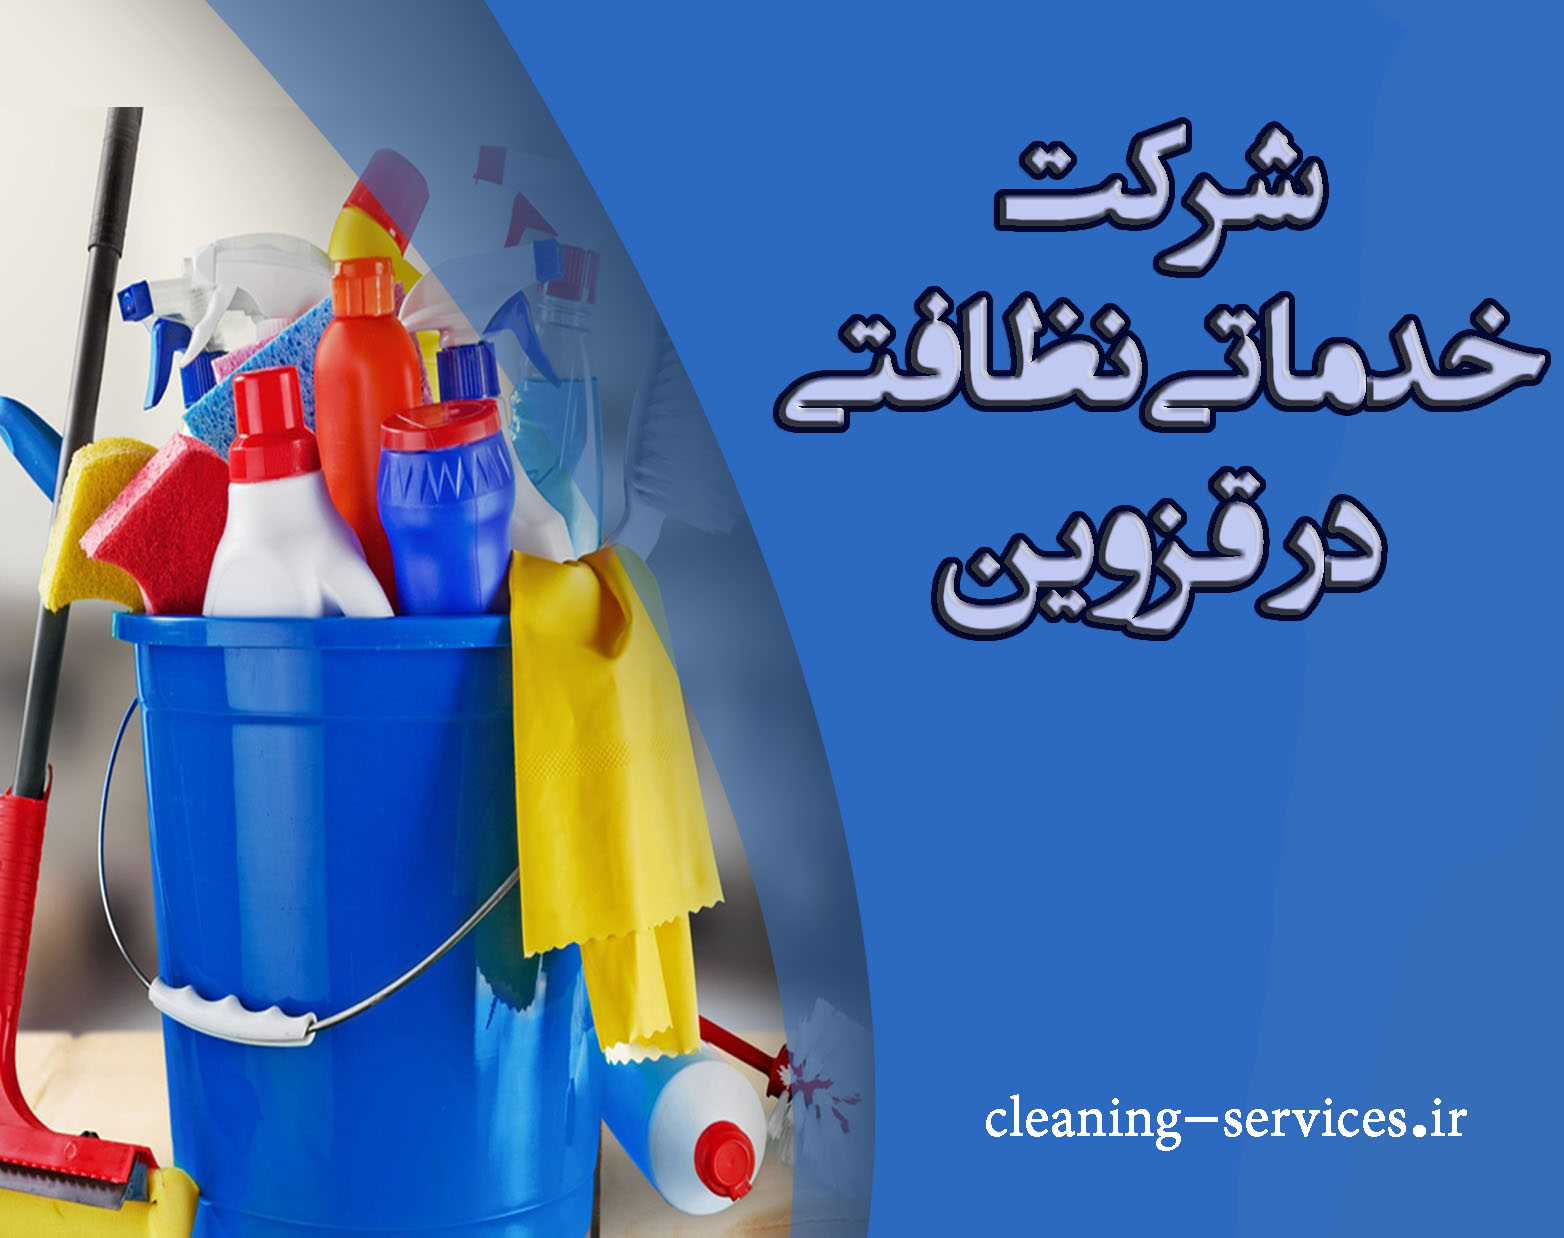 شرکت نظافتی در قزوین